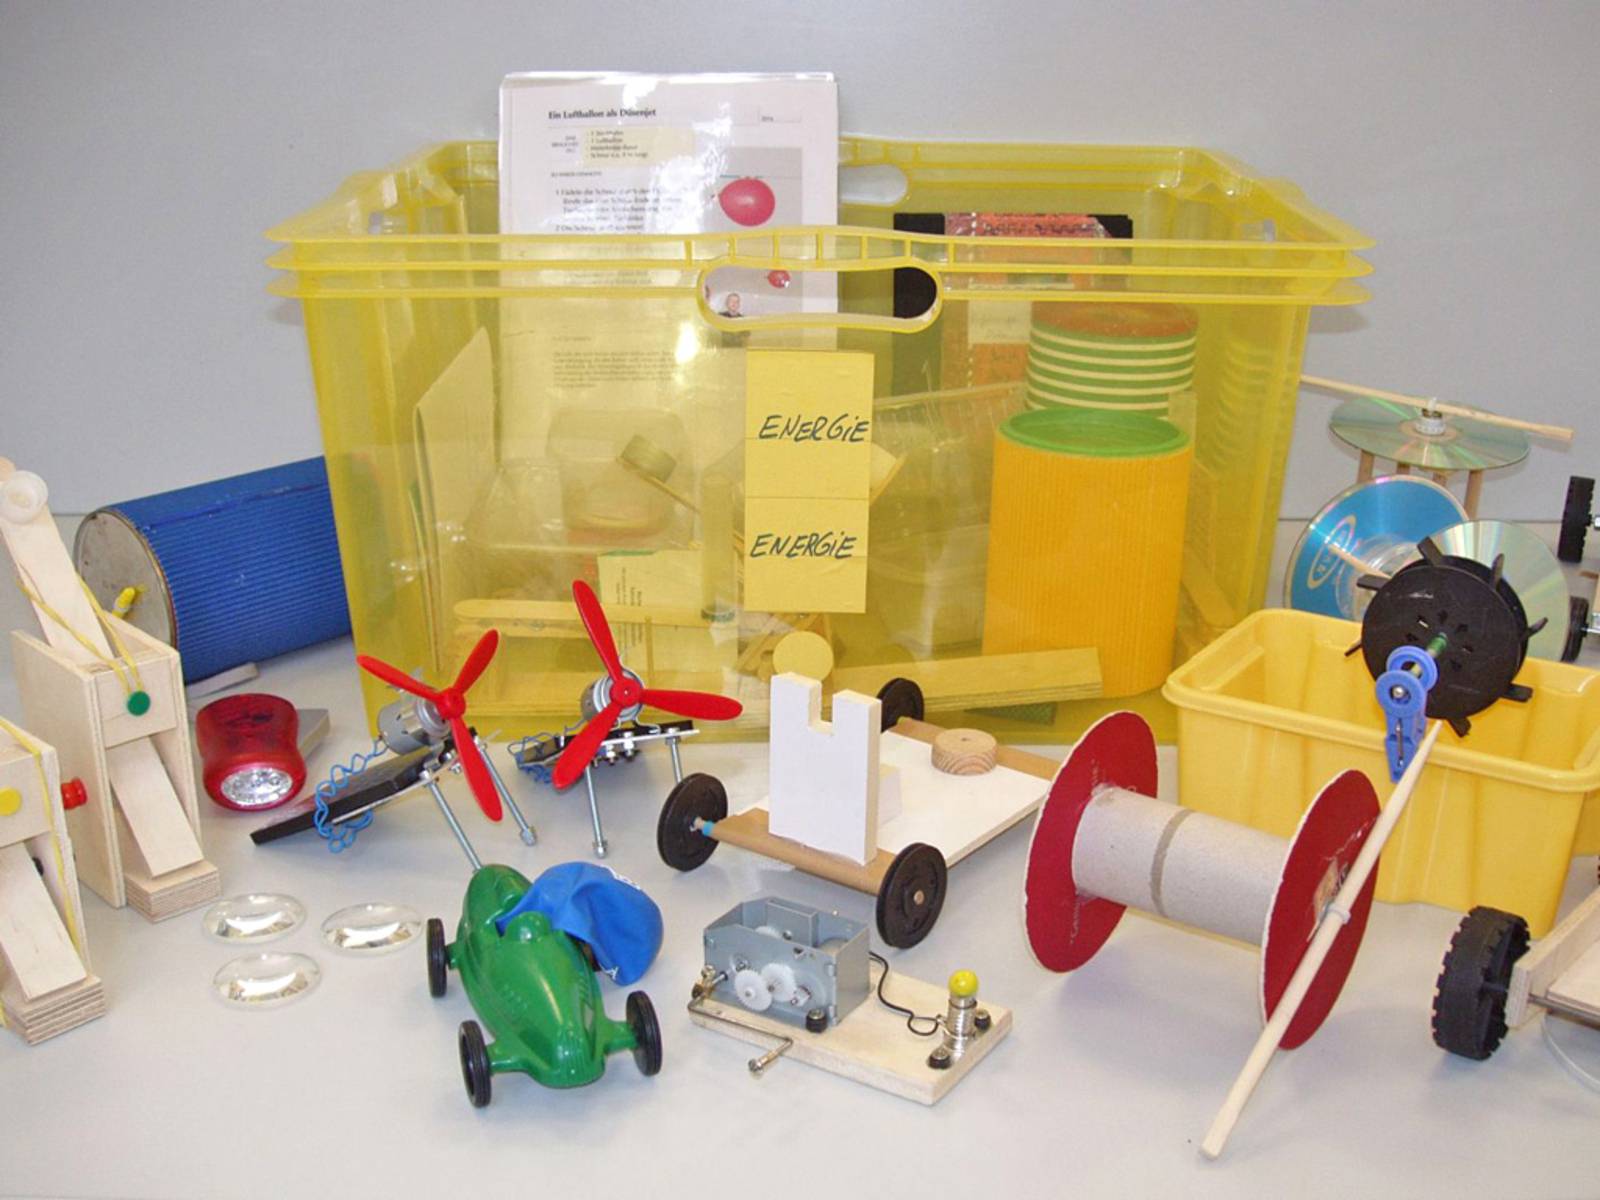 Eine gelbe Plastikkiste mit dem Aufkleber Energie und zahlreiche Miniaturmodelle zum Experimentieren